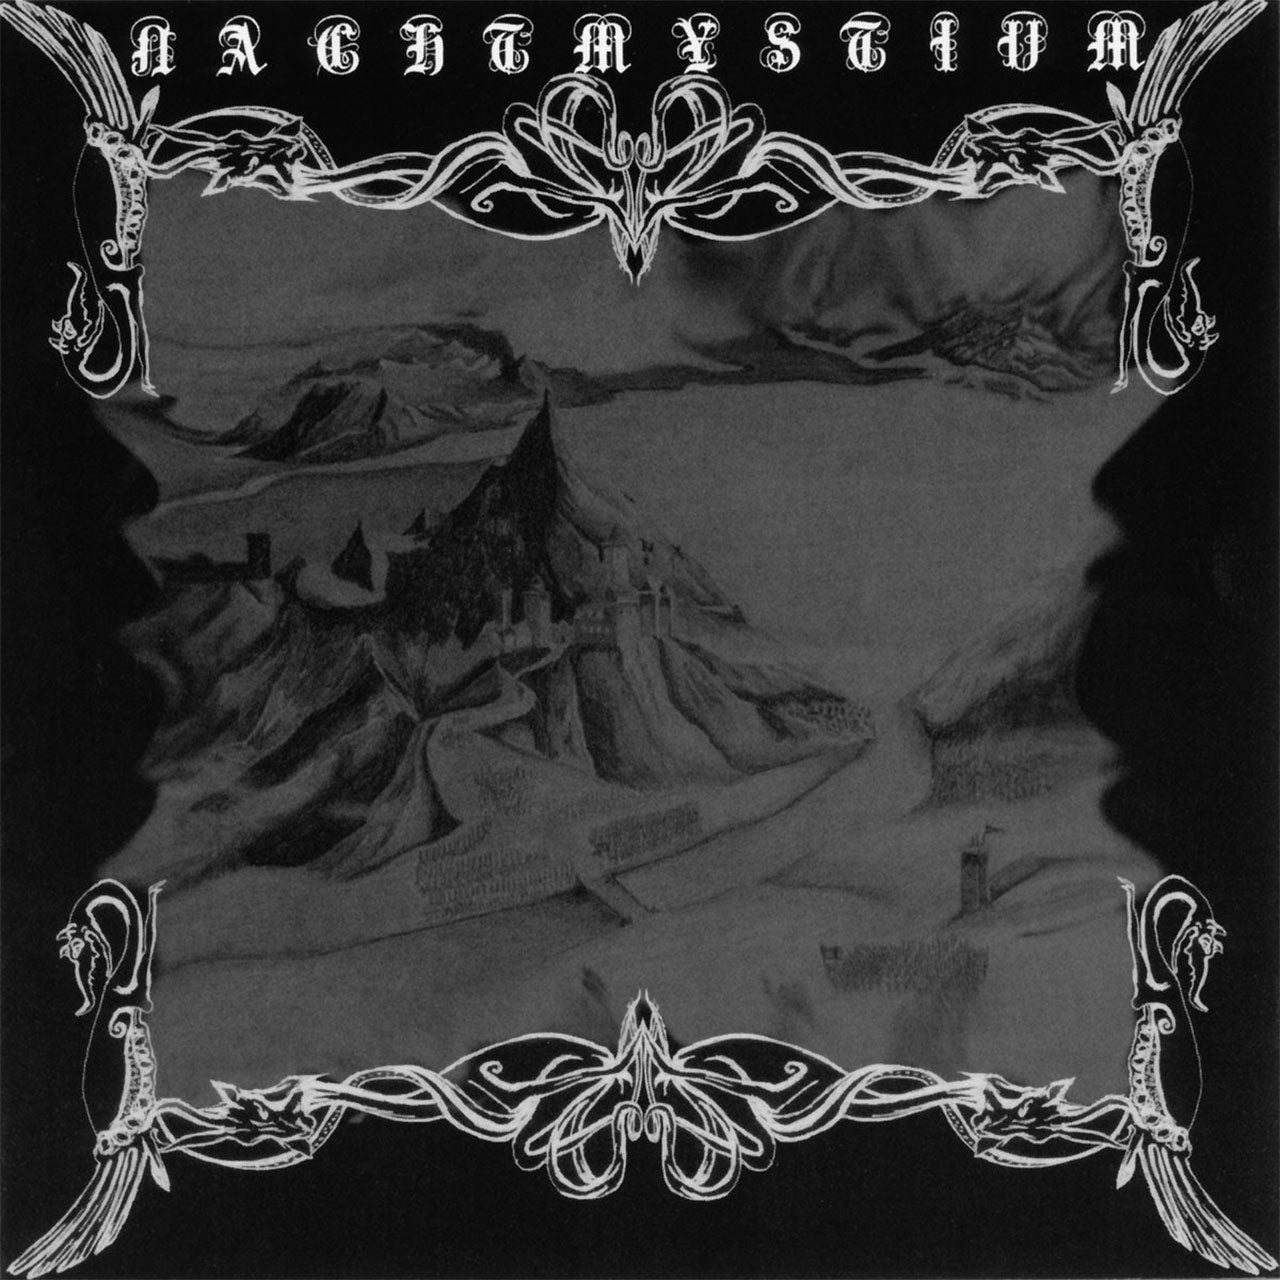 Nachtmystium - Nachtmystium (2008 Reissue) (CD)